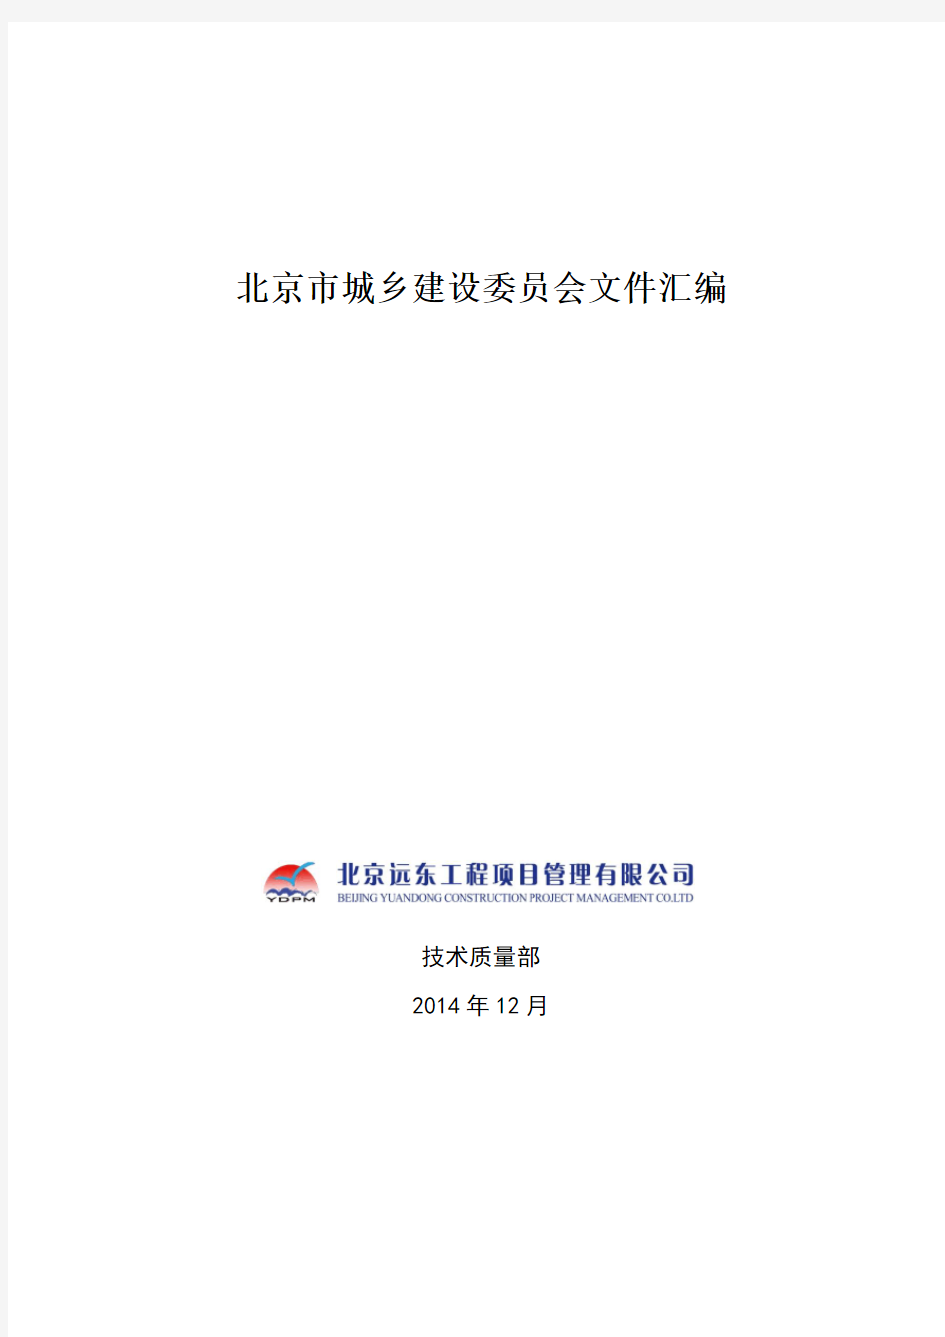 北京市城乡建设委员会文件